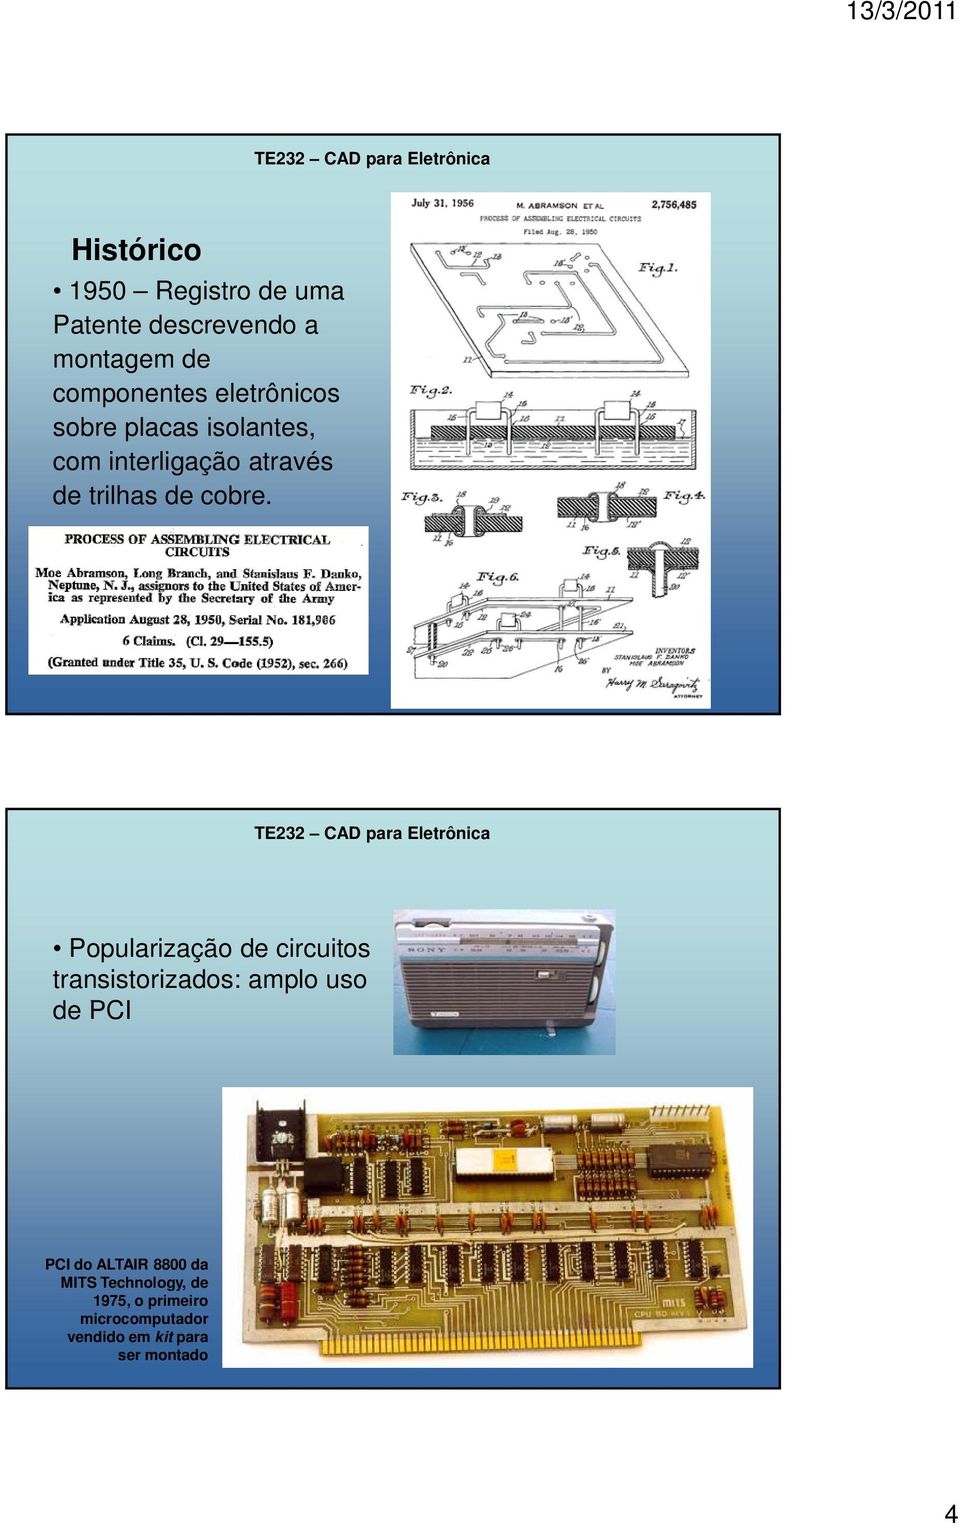 Popularização de circuitos transistorizados: amplo uso de PCI PCI do ALTAIR 8800